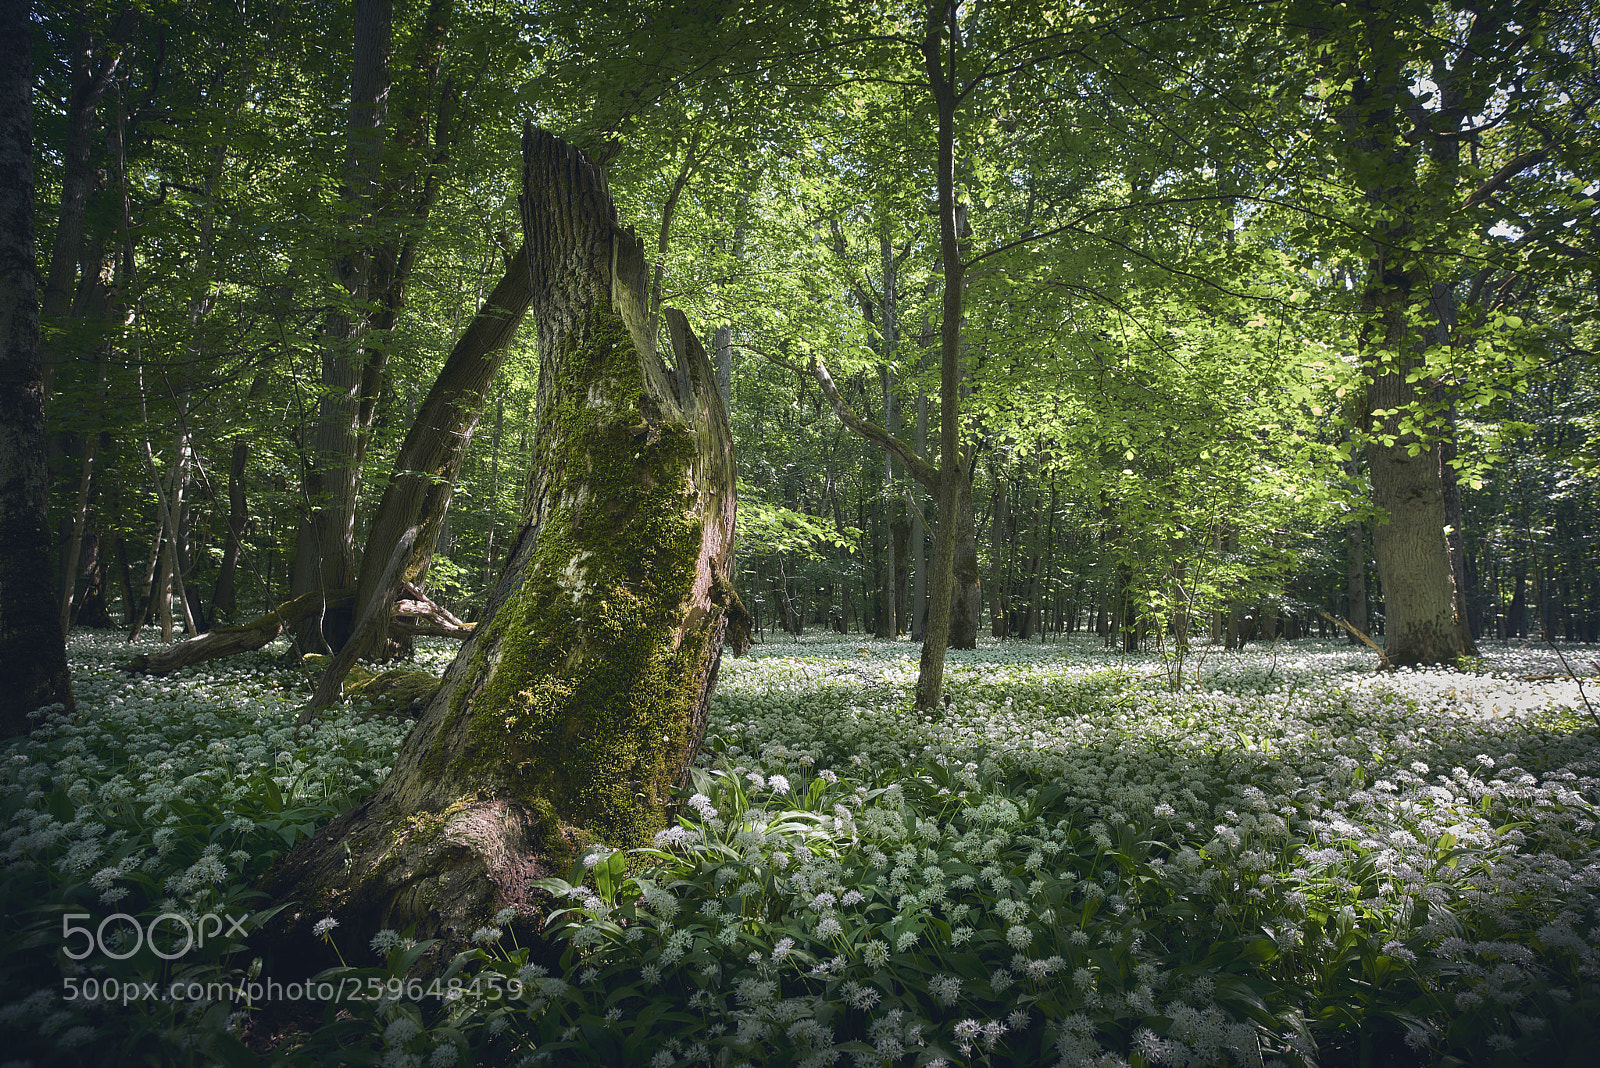 Nikon D800E sample photo. Fairytale forest photography